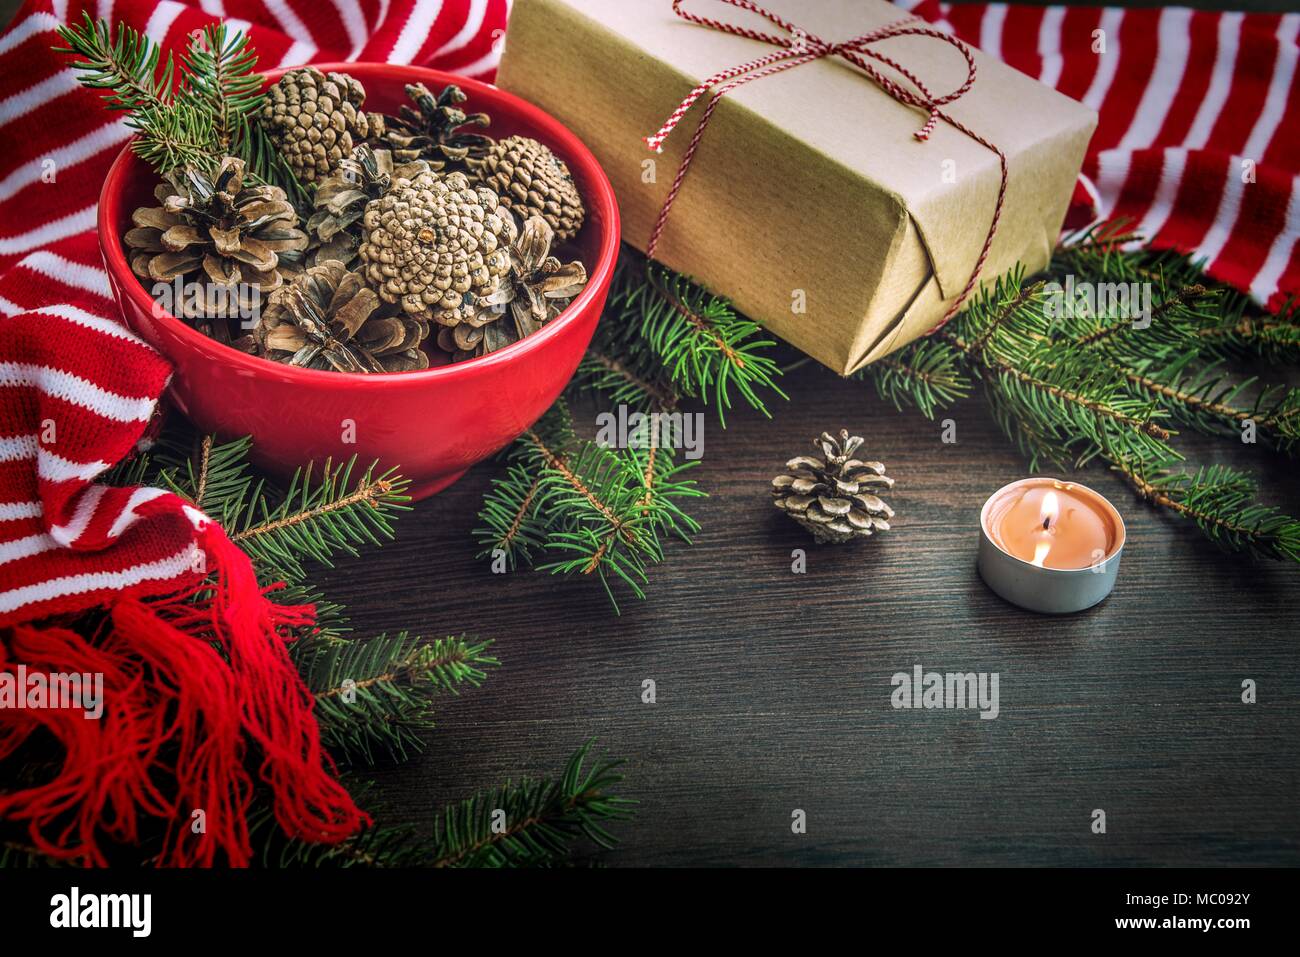 Décoration de Noël - rouge bol plein de cônes de sapin, boîte-cadeau enveloppé dans du papier kraft, des branches de pins, bougie et rouge et blanc à rayures écharpe d'hiver. Chri Banque D'Images